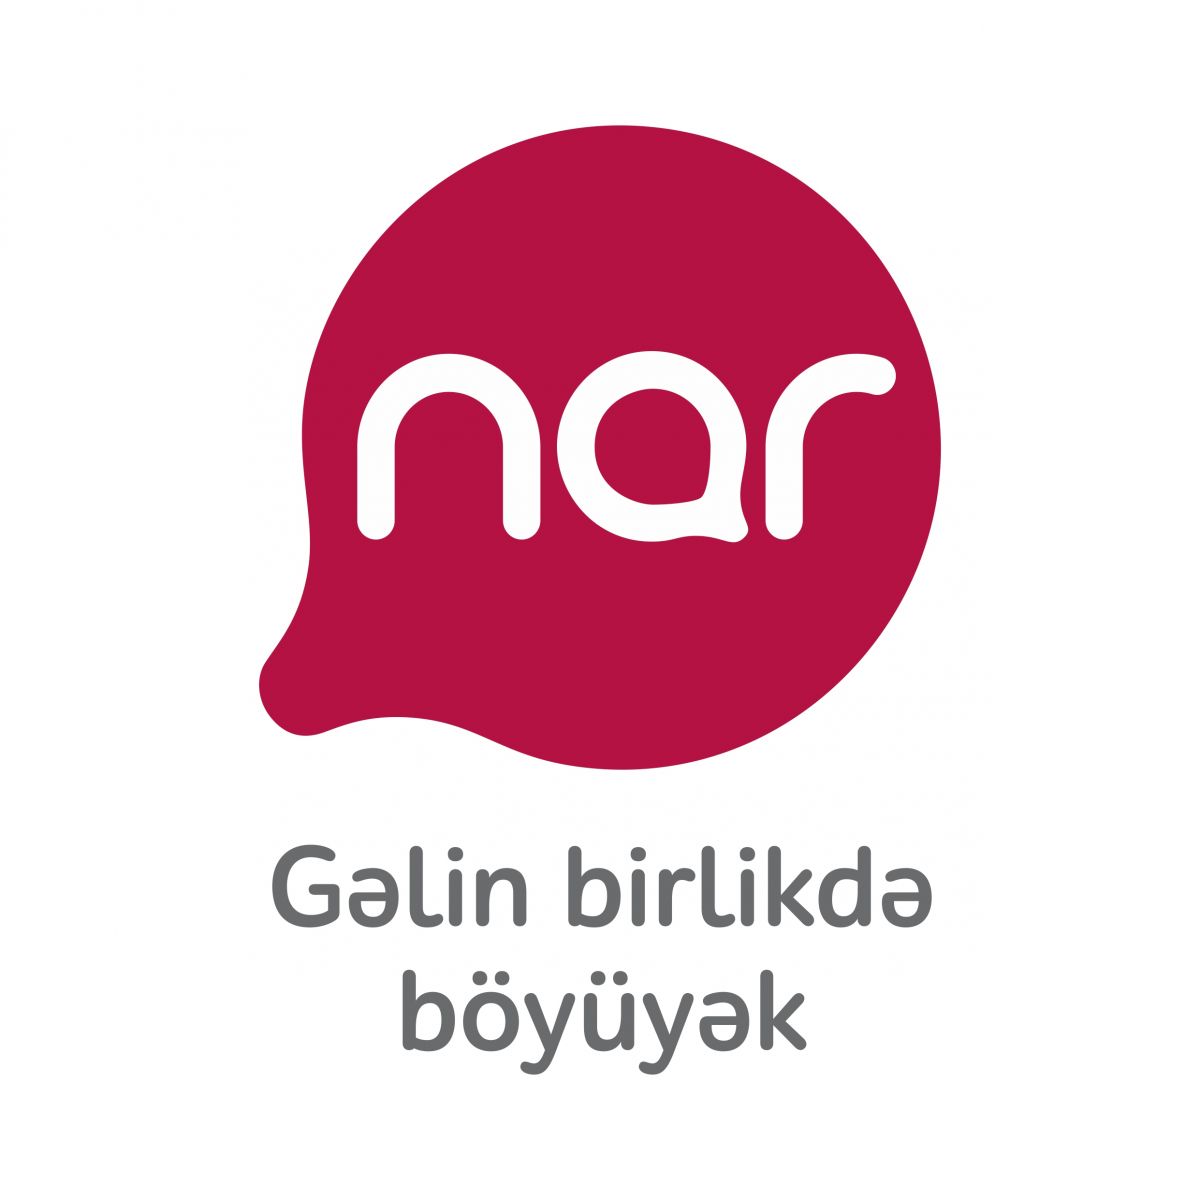 Nar приобретает CityNet и предлагает высокоскоростной интернет по доступной цене под брендом Nar–CityNet